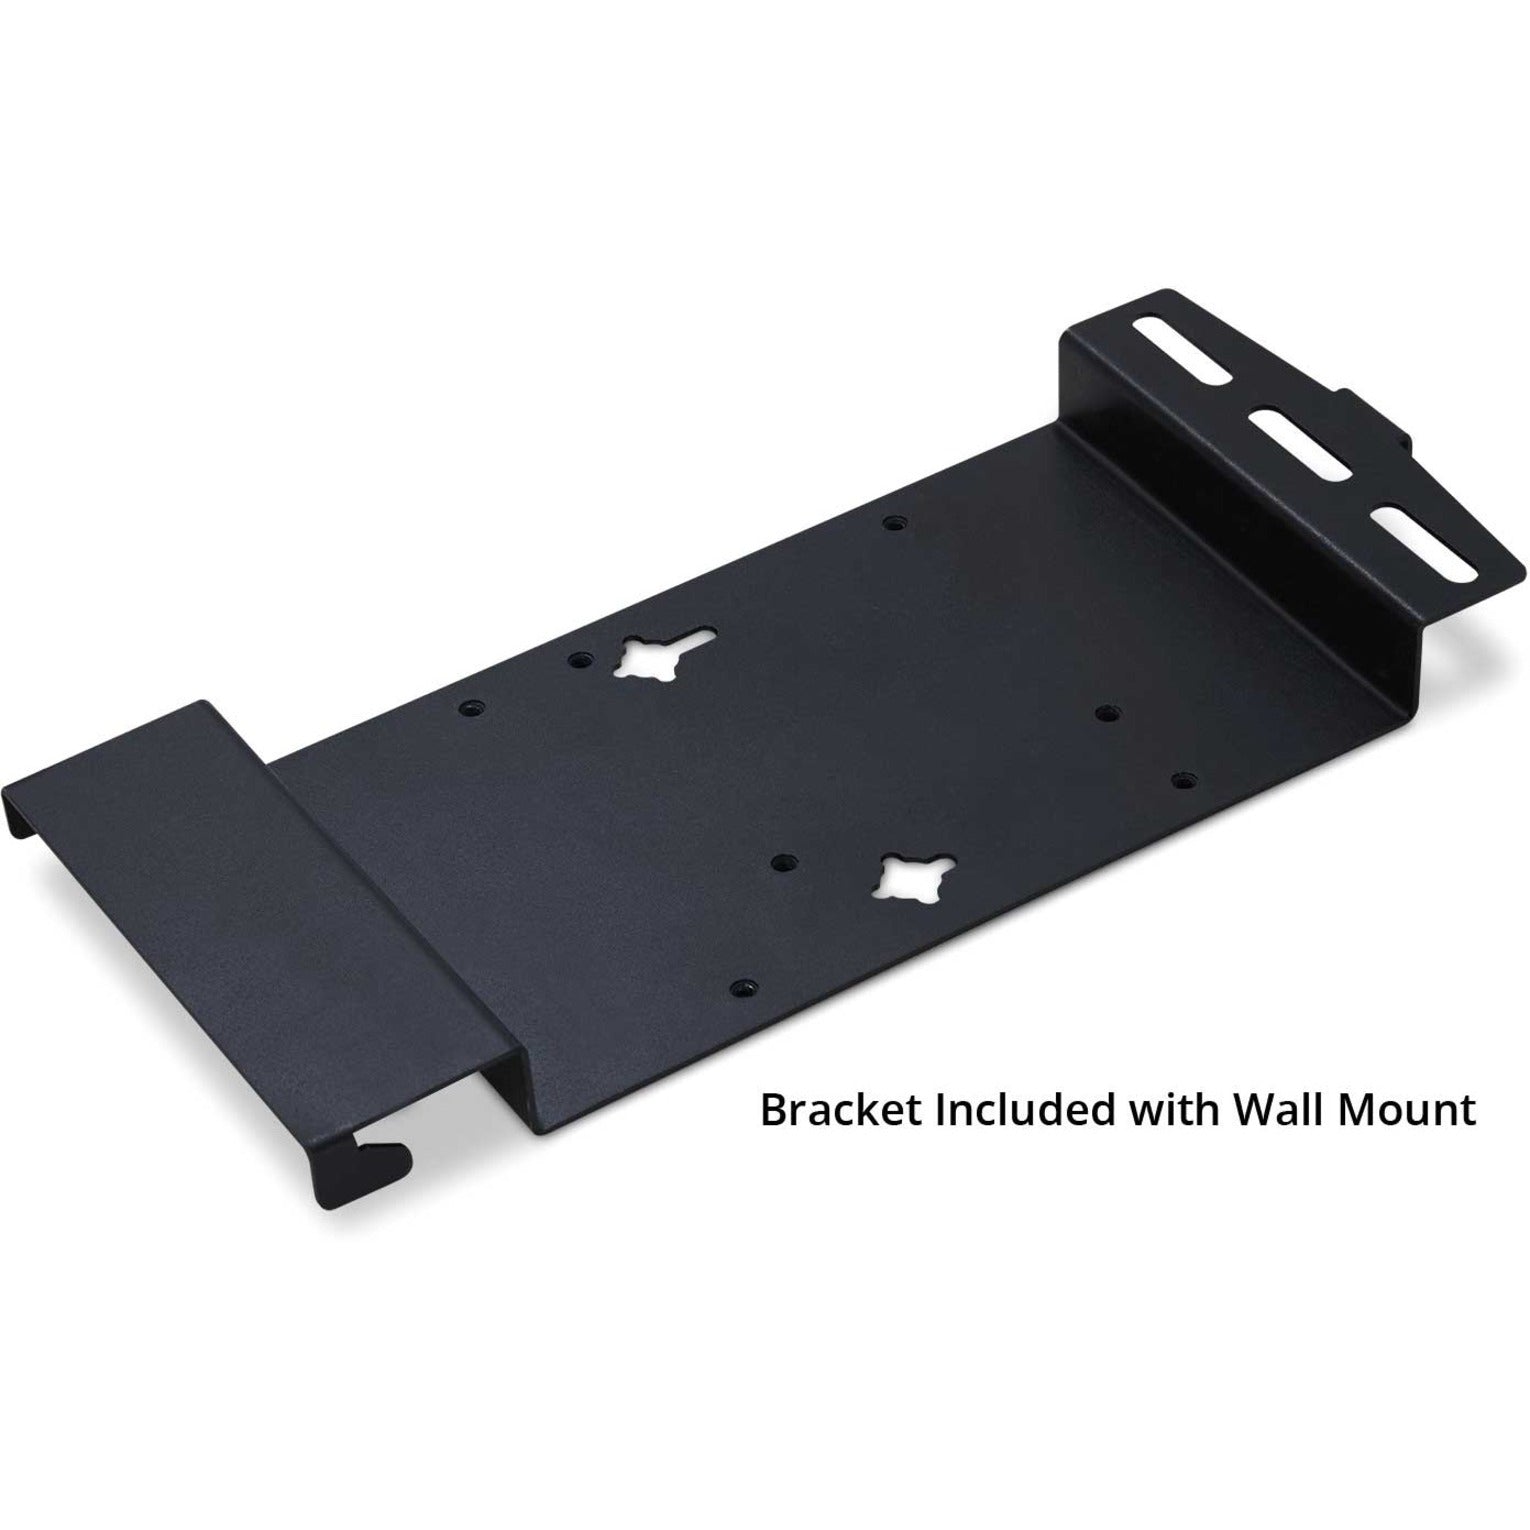 ViewSonic WMK-047-2 Wall Mount, Maximum Load Capacity 352.74 lb, VESA Mount Compatible